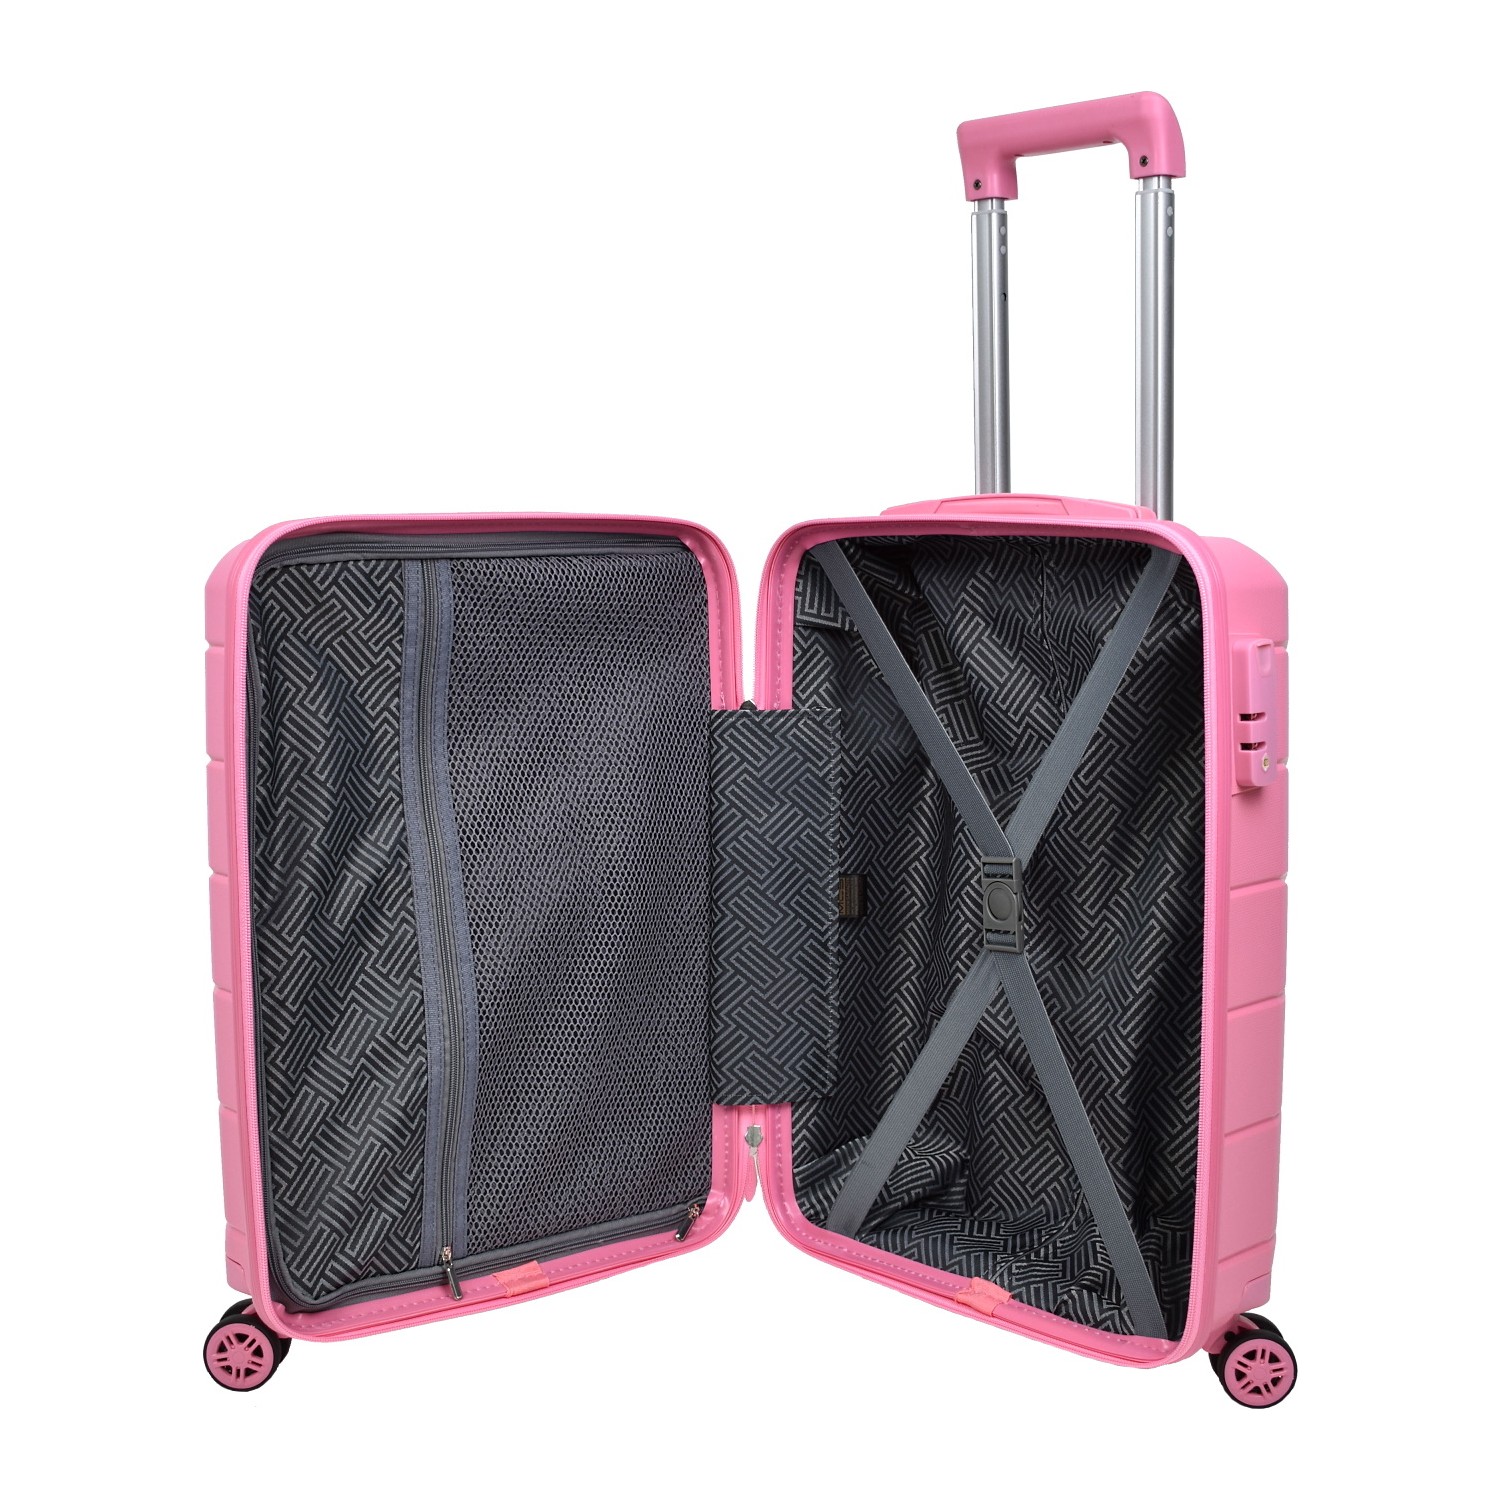 Большой чемодан из полипропилена MCS V366 L PINK! Для 23 кг! - 2